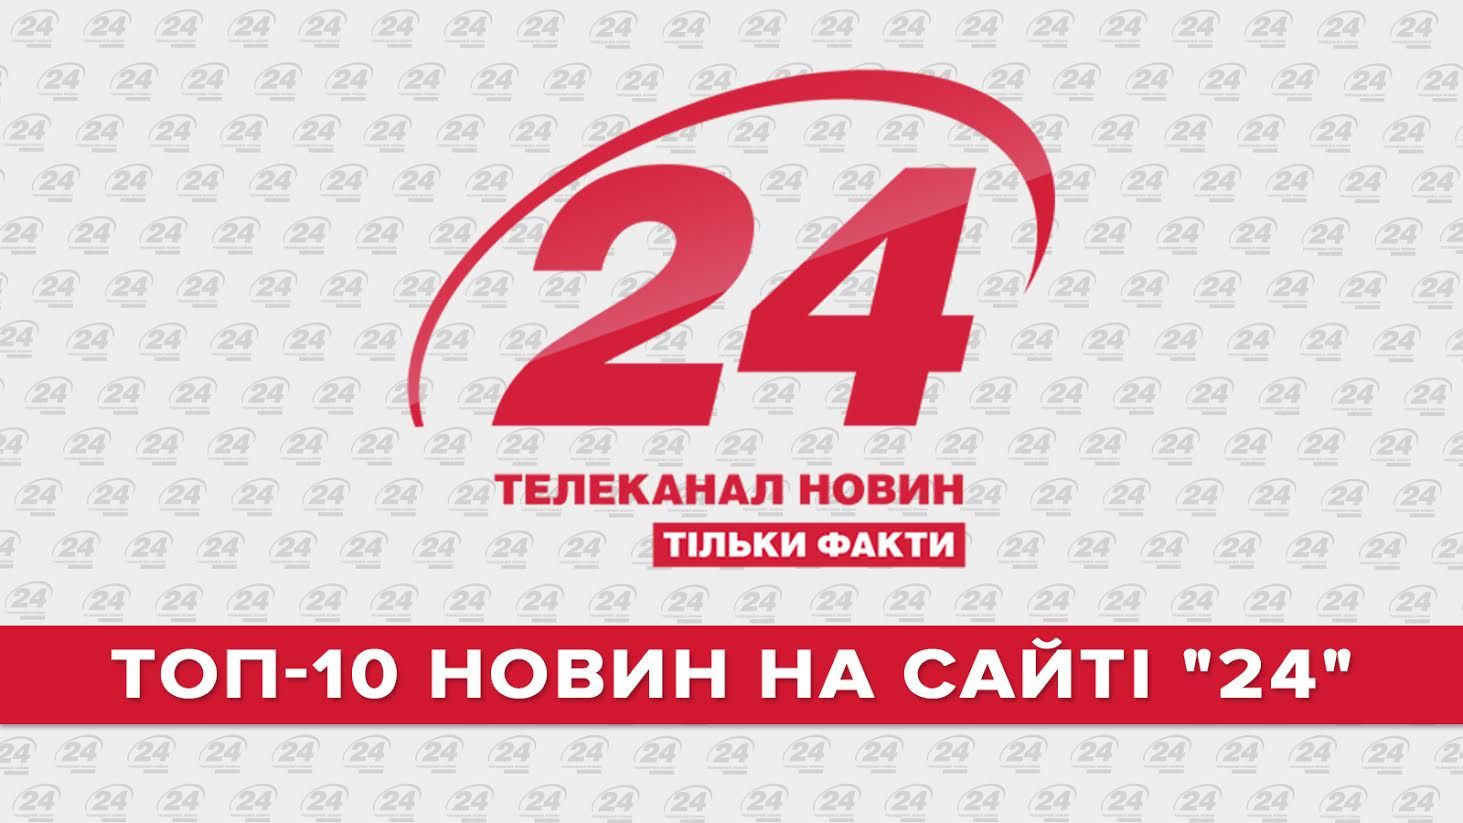 ТОП-10 новин на сайті "24" за 2015 рік